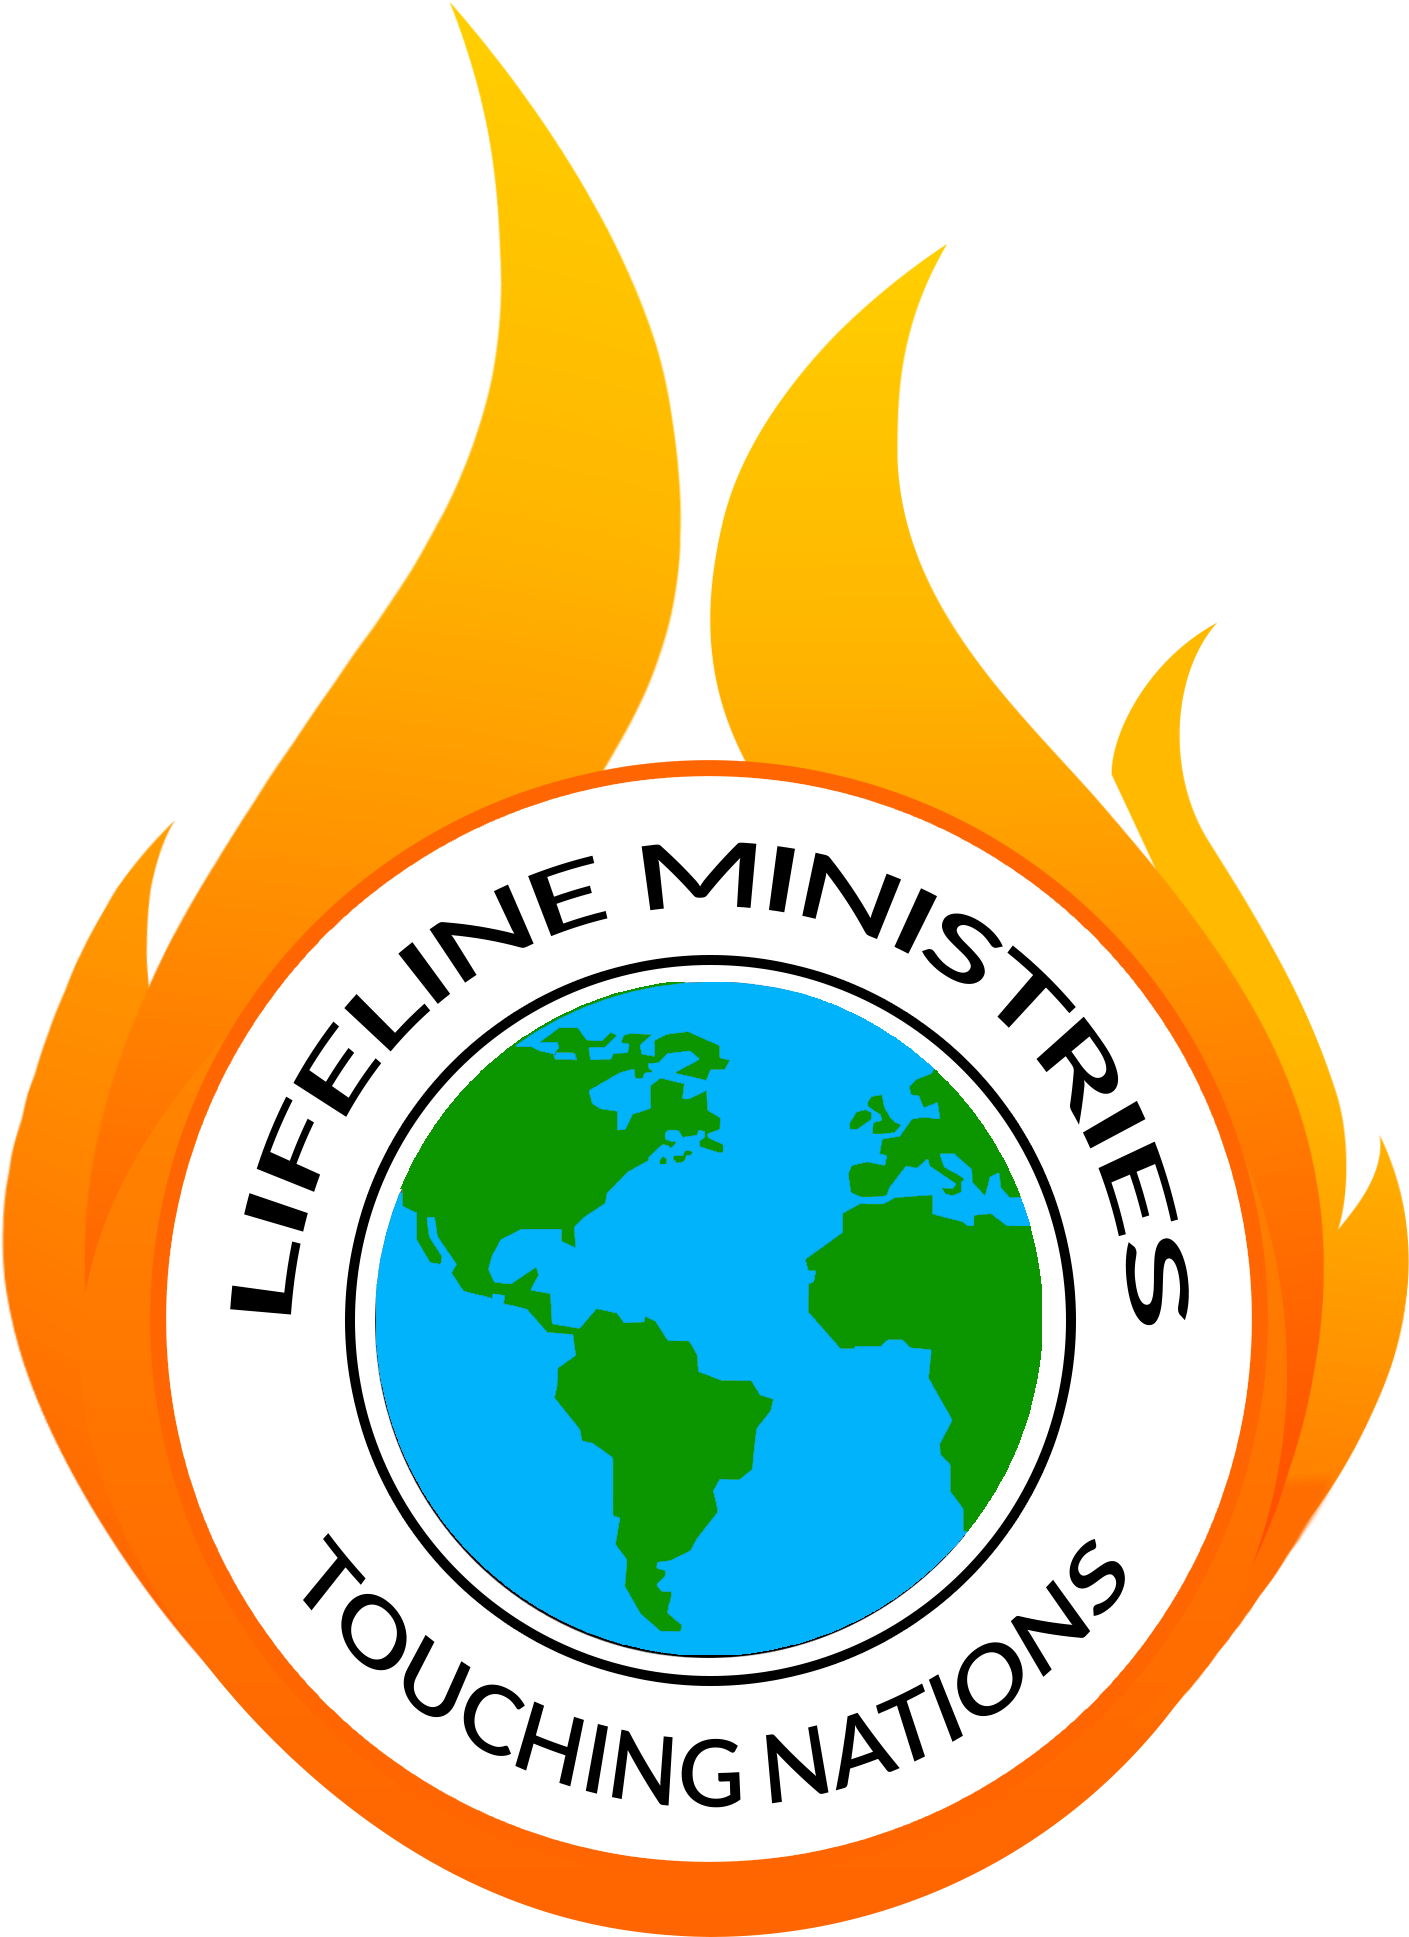 Lifeline Ministries Touching Nations - Ich Bin Mit Ihr Karte (2000x2000)